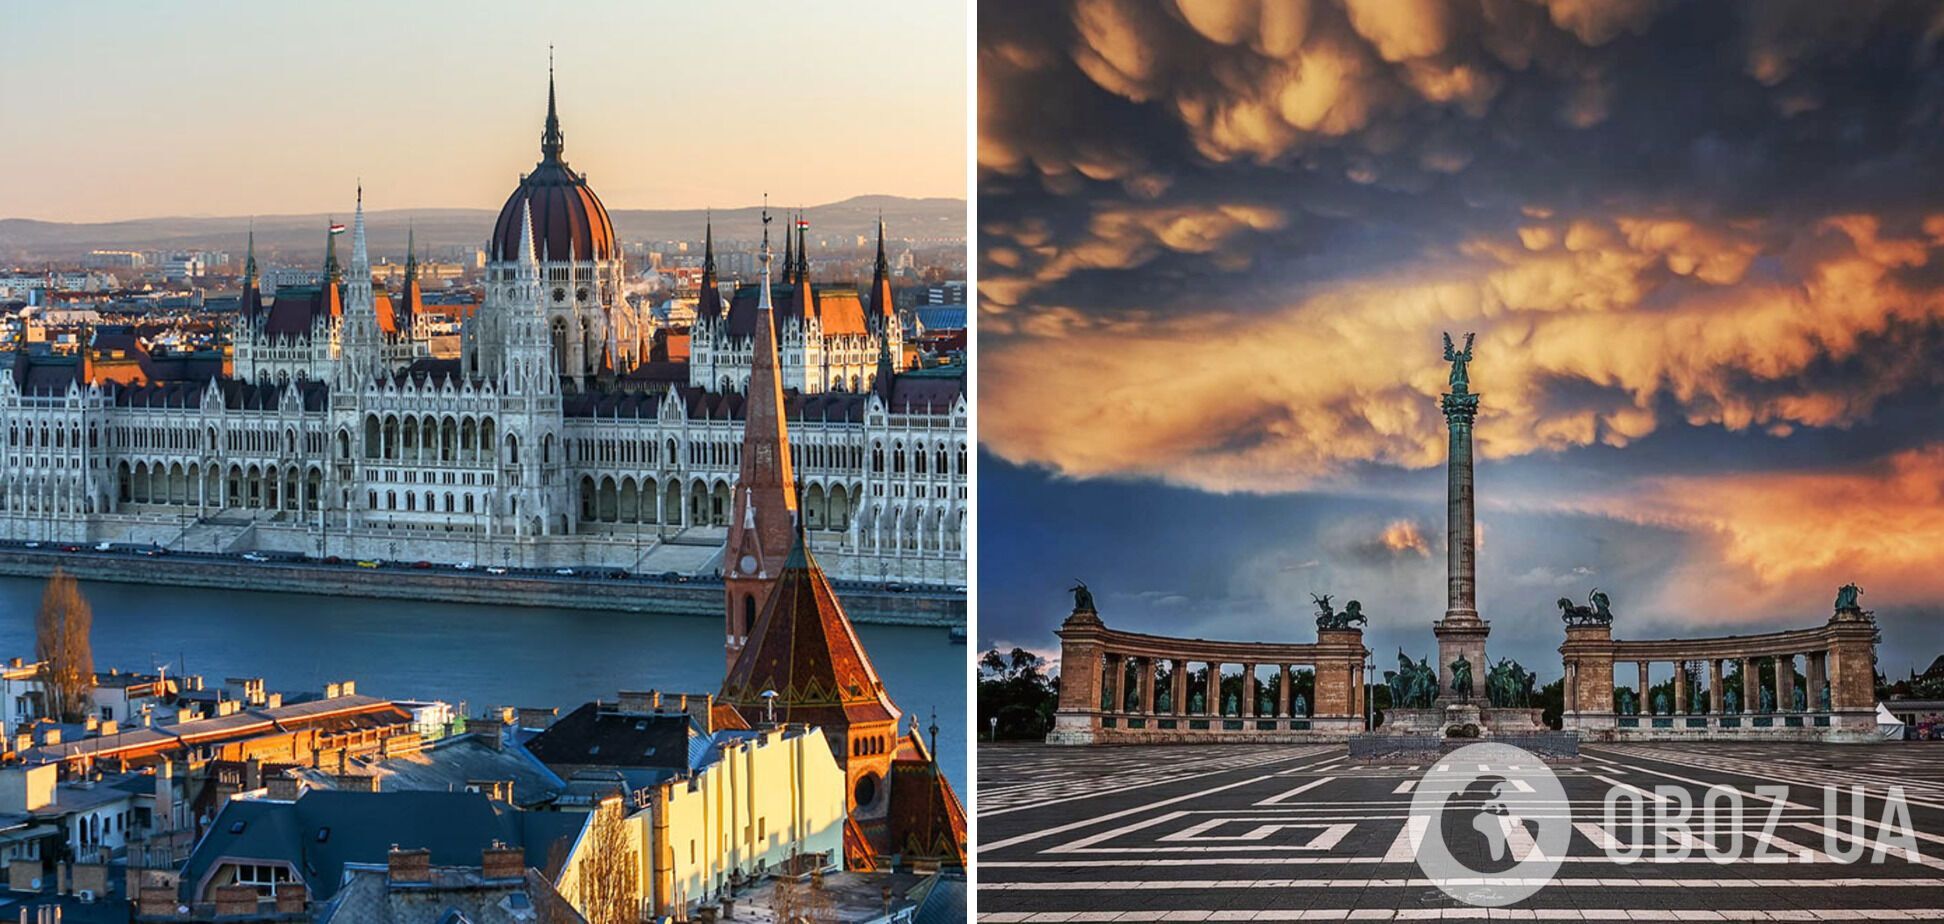 Будапешт також є відомим туристичним осередком